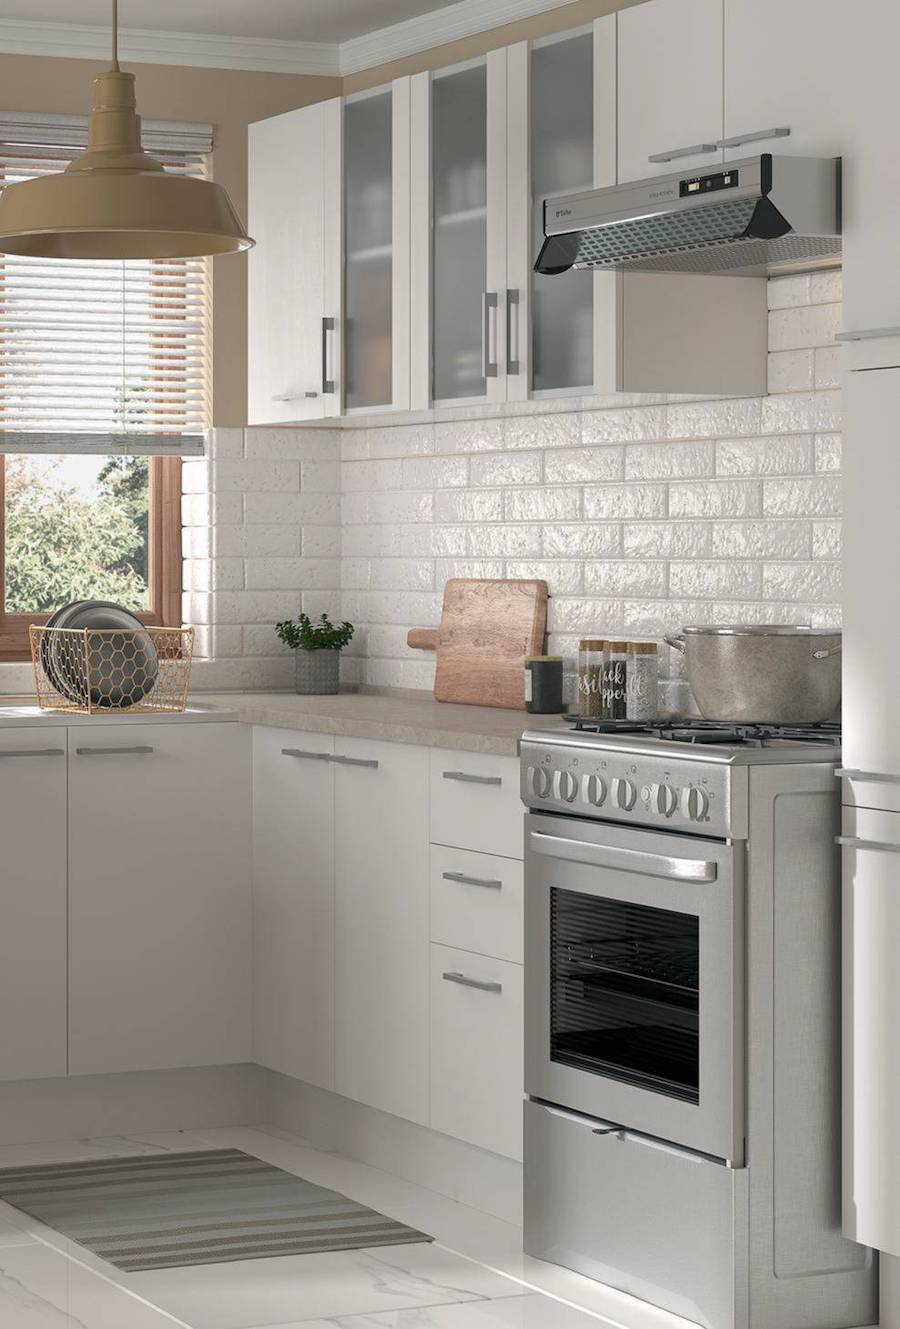 Cocina con azulejos de cerámica blancos tipo ladrillo, muebles blancos y cubierta beige. También hay una cocina y campana gris.